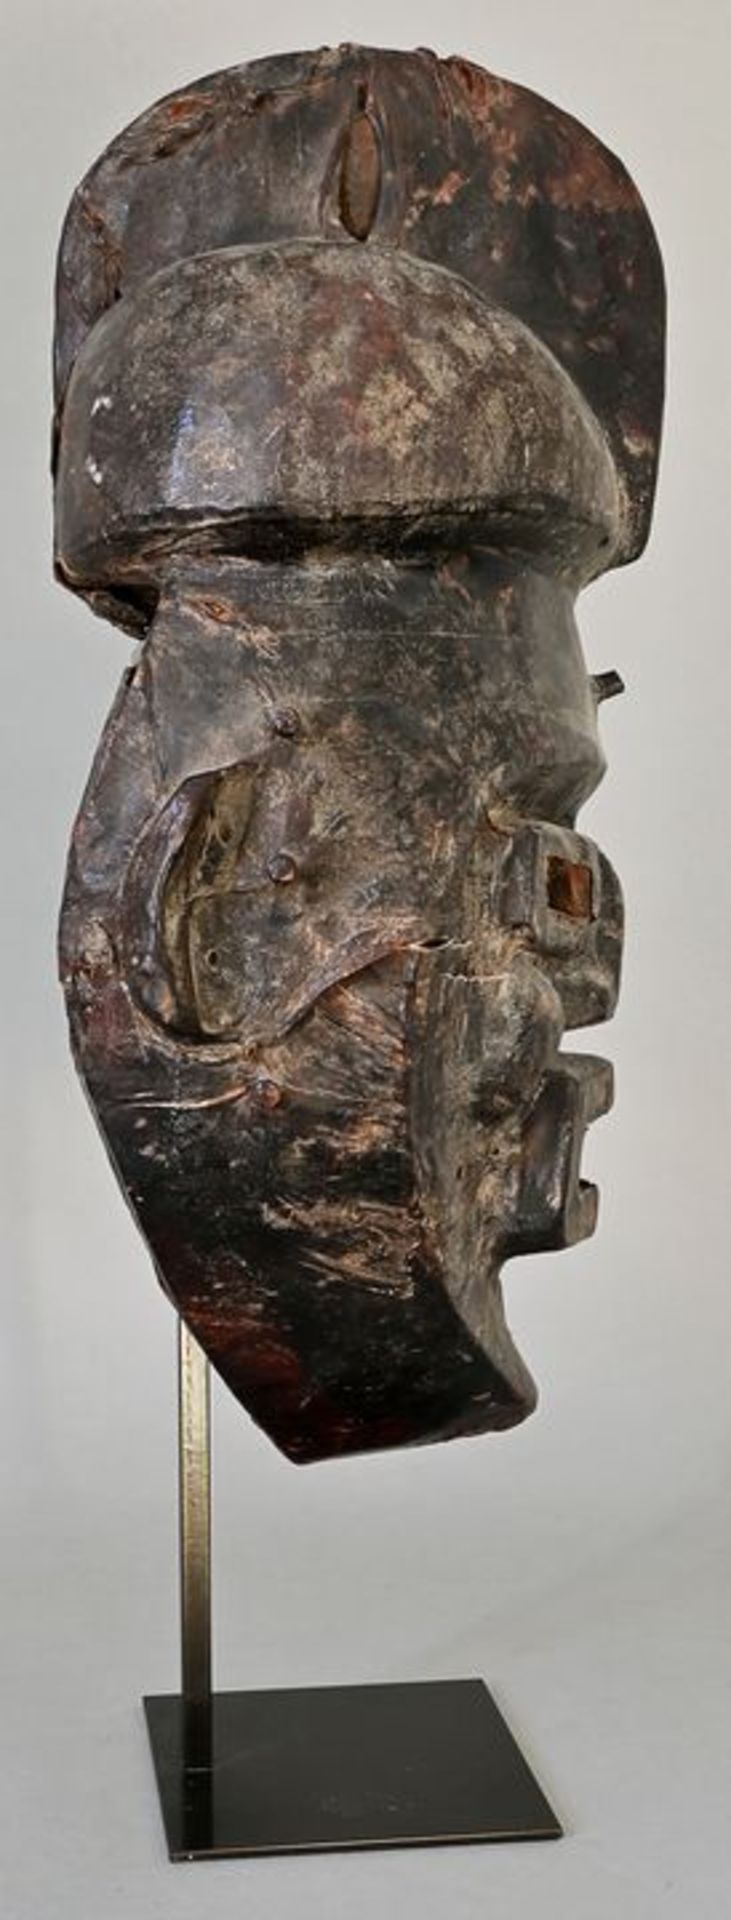 Maske agwe/ agwe mask - Image 2 of 3